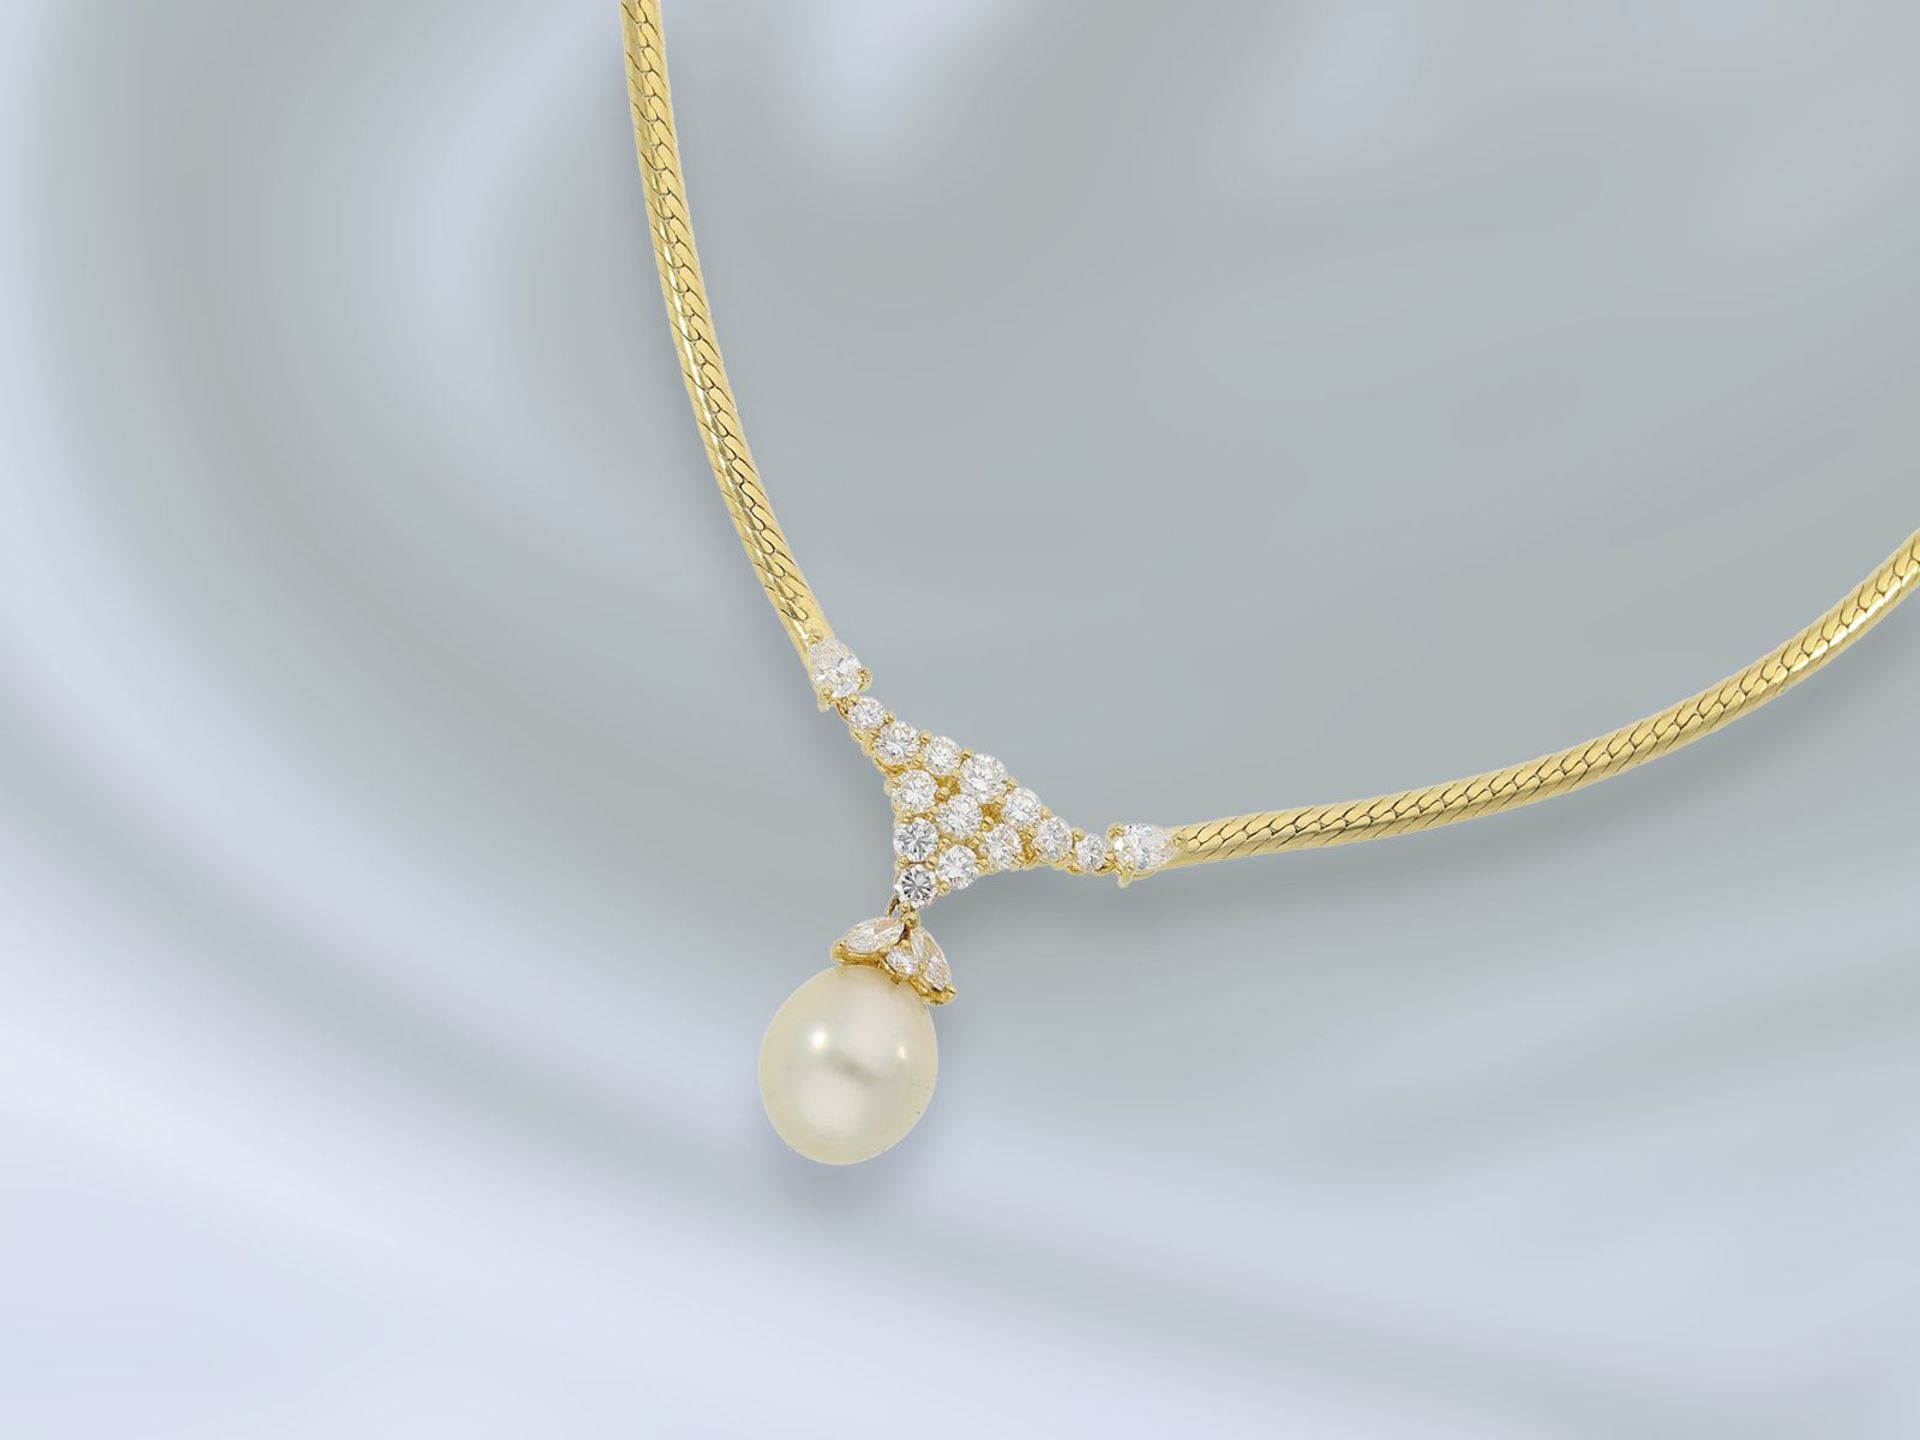 Kette/Collier: besonders edles und geschmackvolles Damencollier mit seltener, großer Perle und